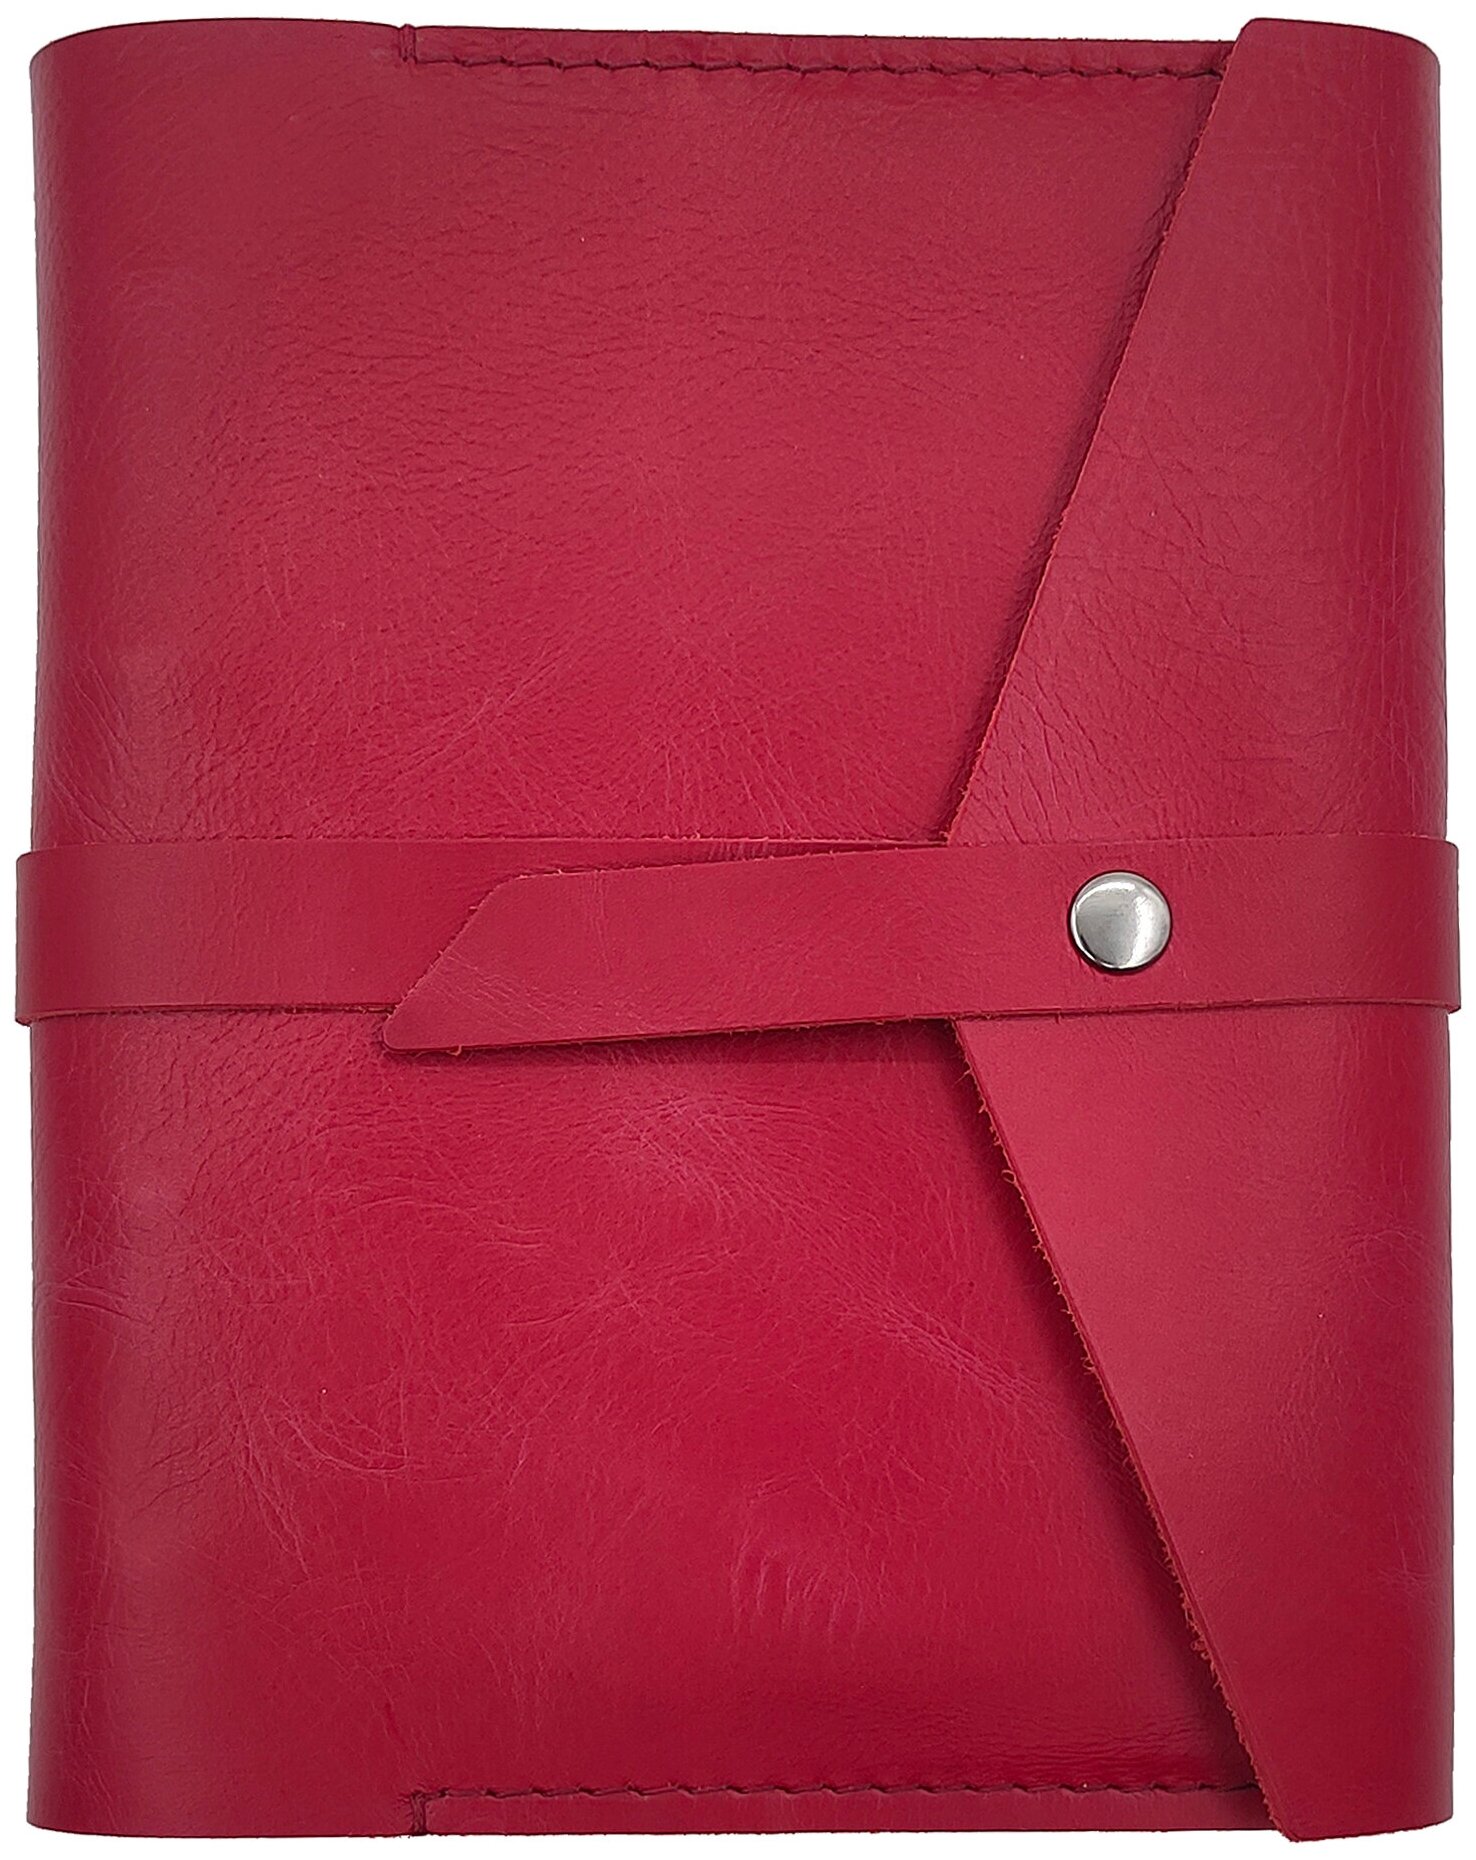 Красный ежедневник недатированный кожаный на кольцах А5, блокнот-планер из натуральной кожи для записей, MBN-RP-POST-RD